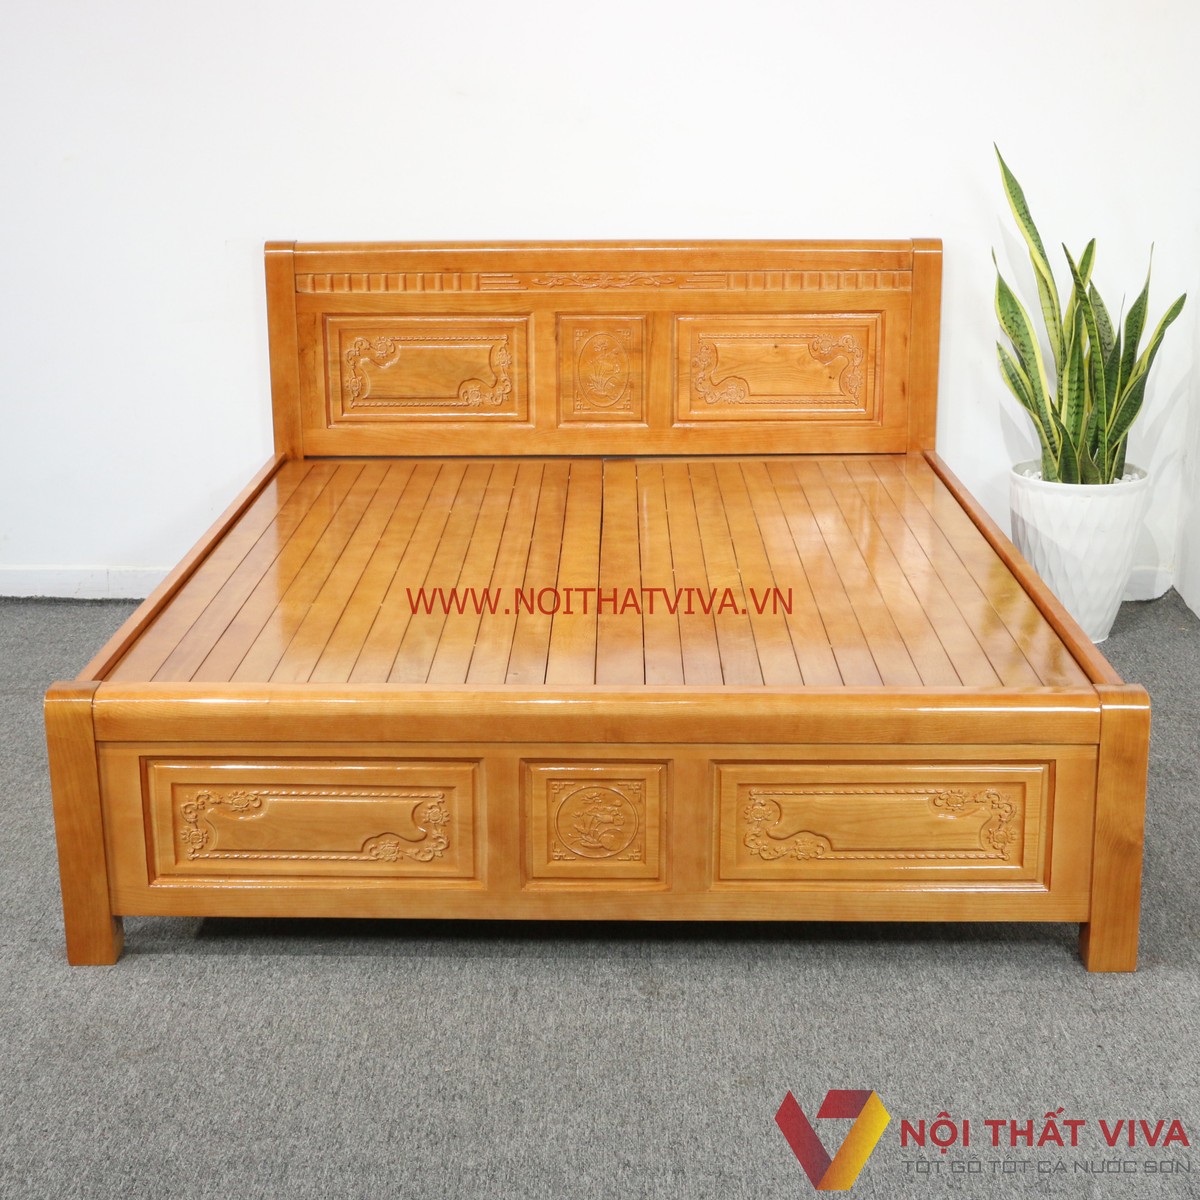 Cần lưu ý gì để chọn đúng giường 1m2 gỗ Sồi vừa rẻ vừa bền?